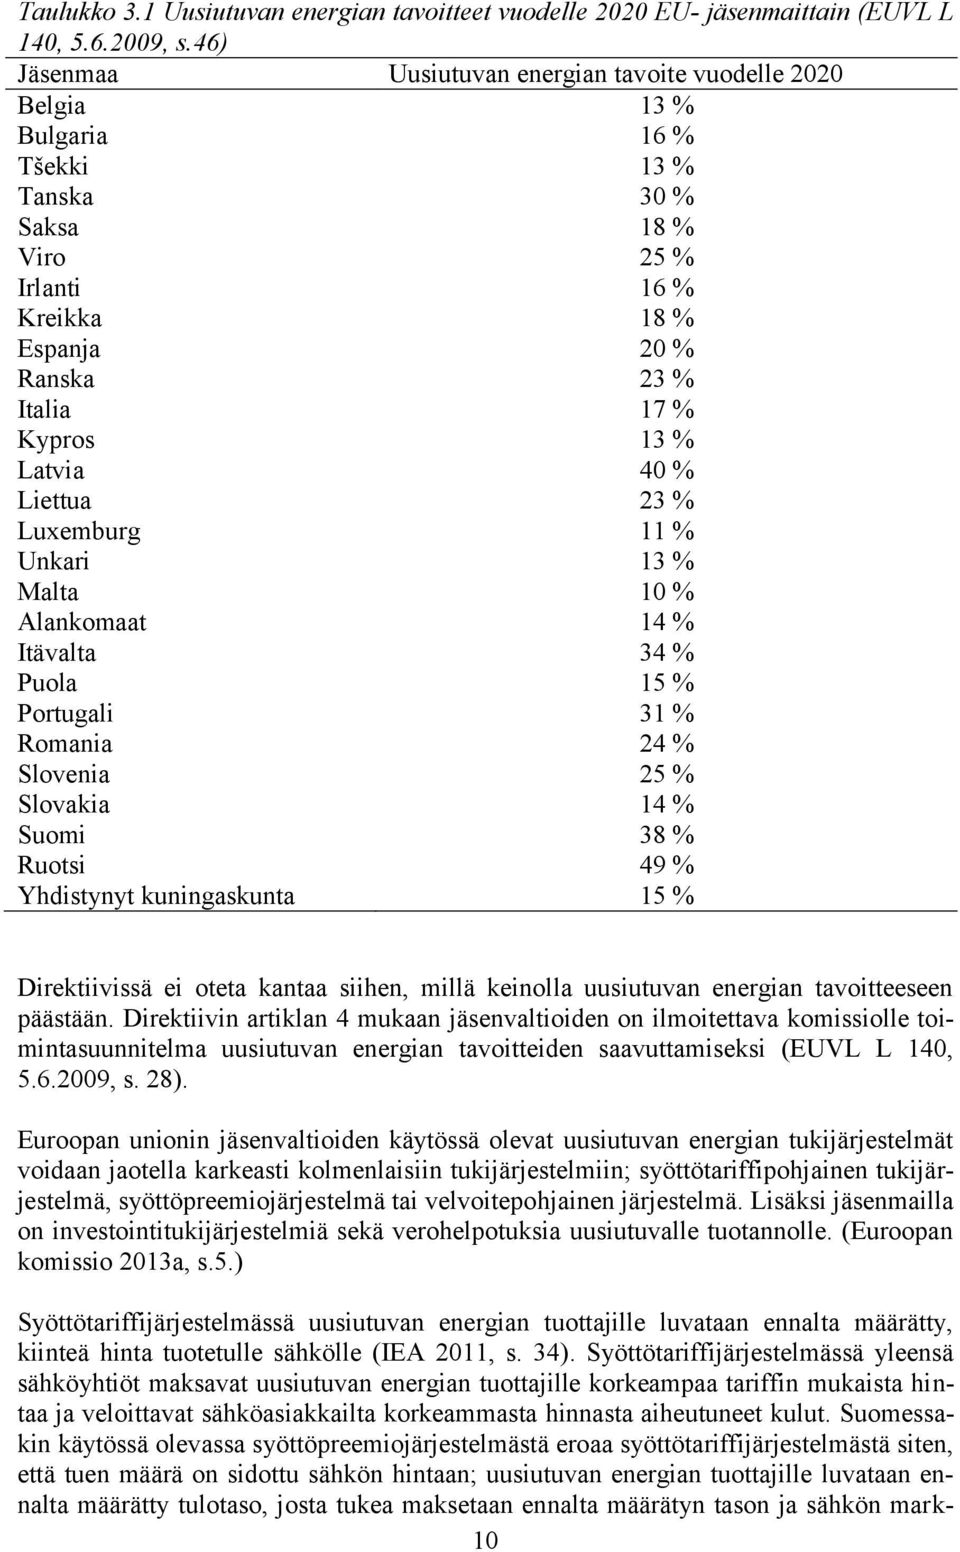 % Latvia 40 % Liettua 23 % Luxemburg 11 % Unkari 13 % Malta 10 % Alankomaat 14 % Itävalta 34 % Puola 15 % Portugali 31 % Romania 24 % Slovenia 25 % Slovakia 14 % Suomi 38 % Ruotsi 49 % Yhdistynyt